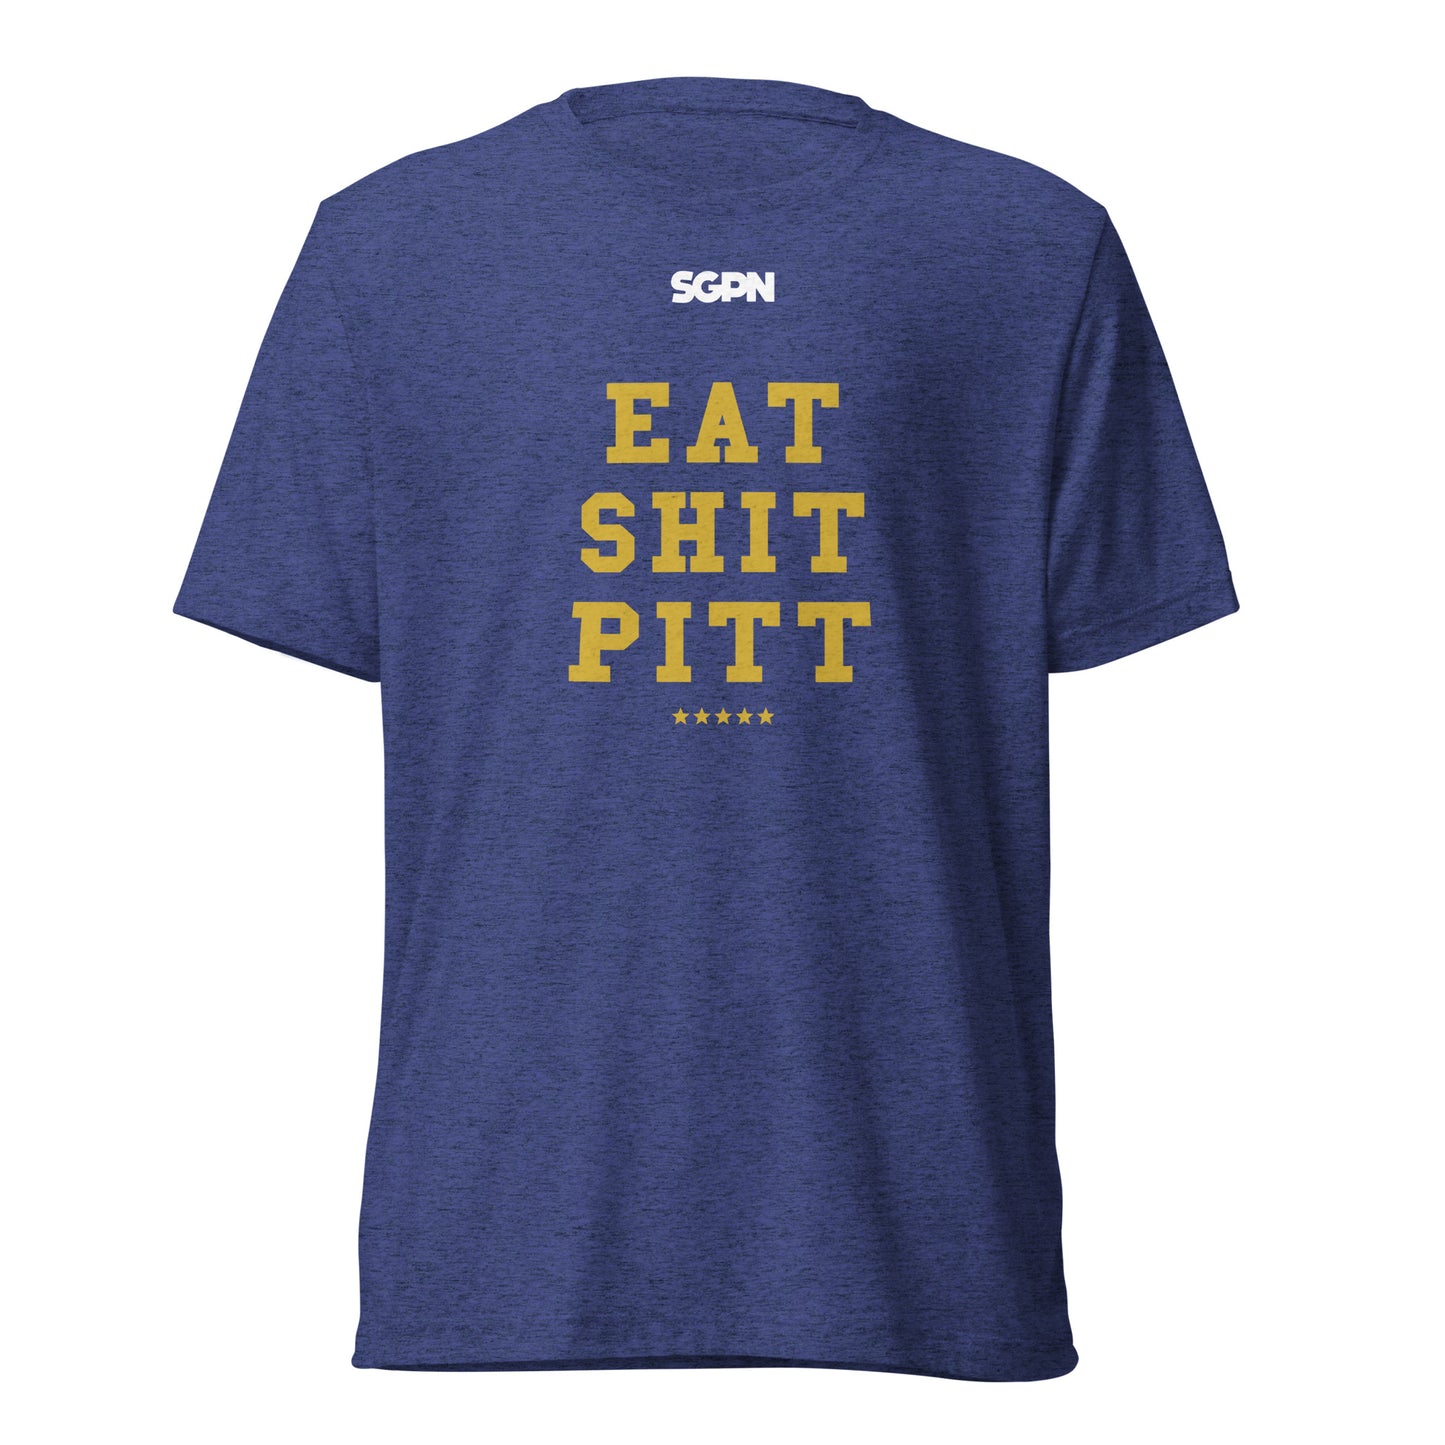 Eat Shit Pitt - Short sleeve t-shirt